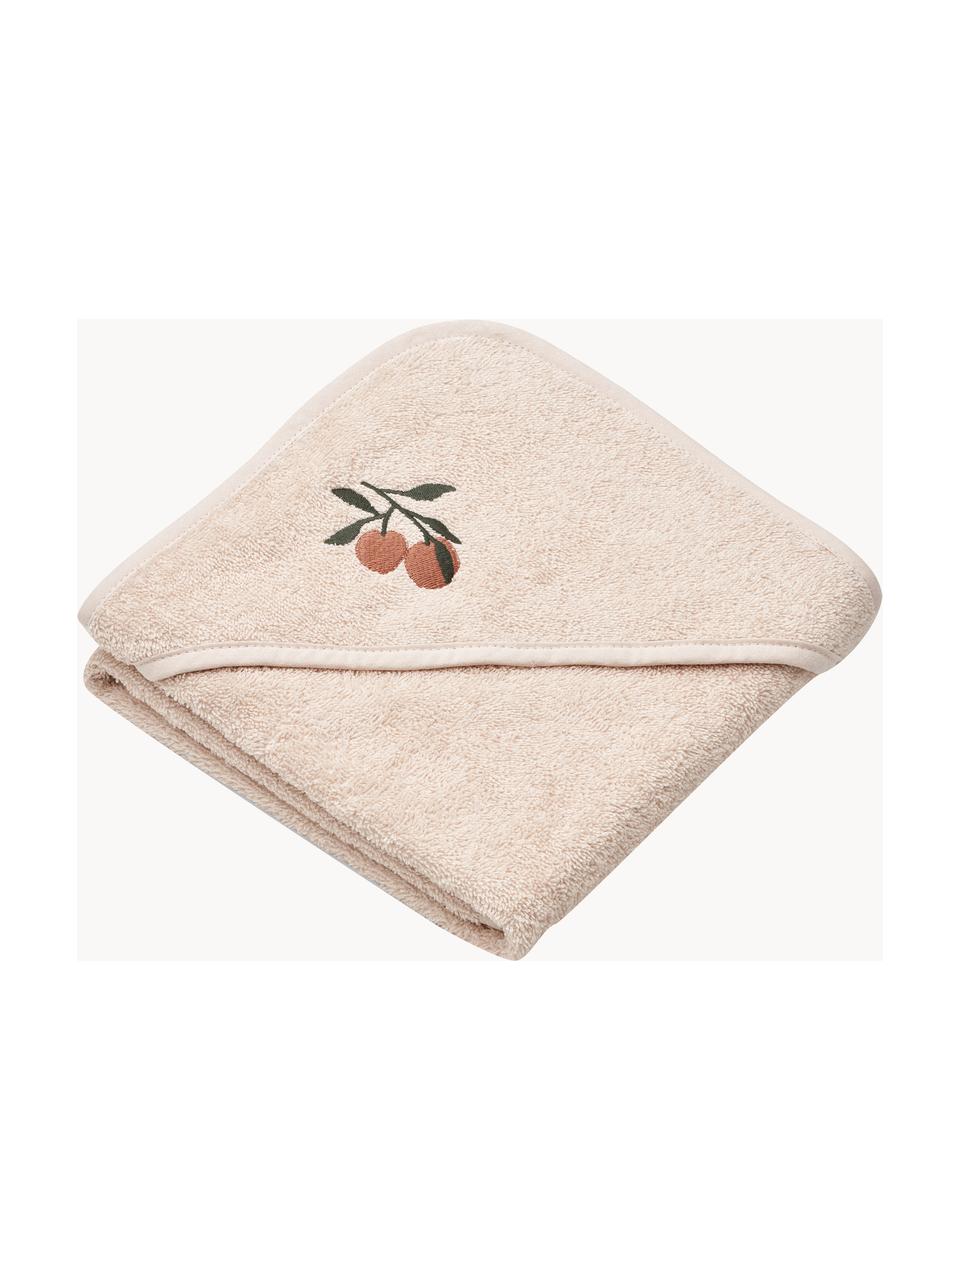 Dětský ručník z organické bavlny Batu, 100 % bio bavlna, s certifikátem GOTS, Krémově bílá, motiv broskve, Š 70 cm, D 70 cm